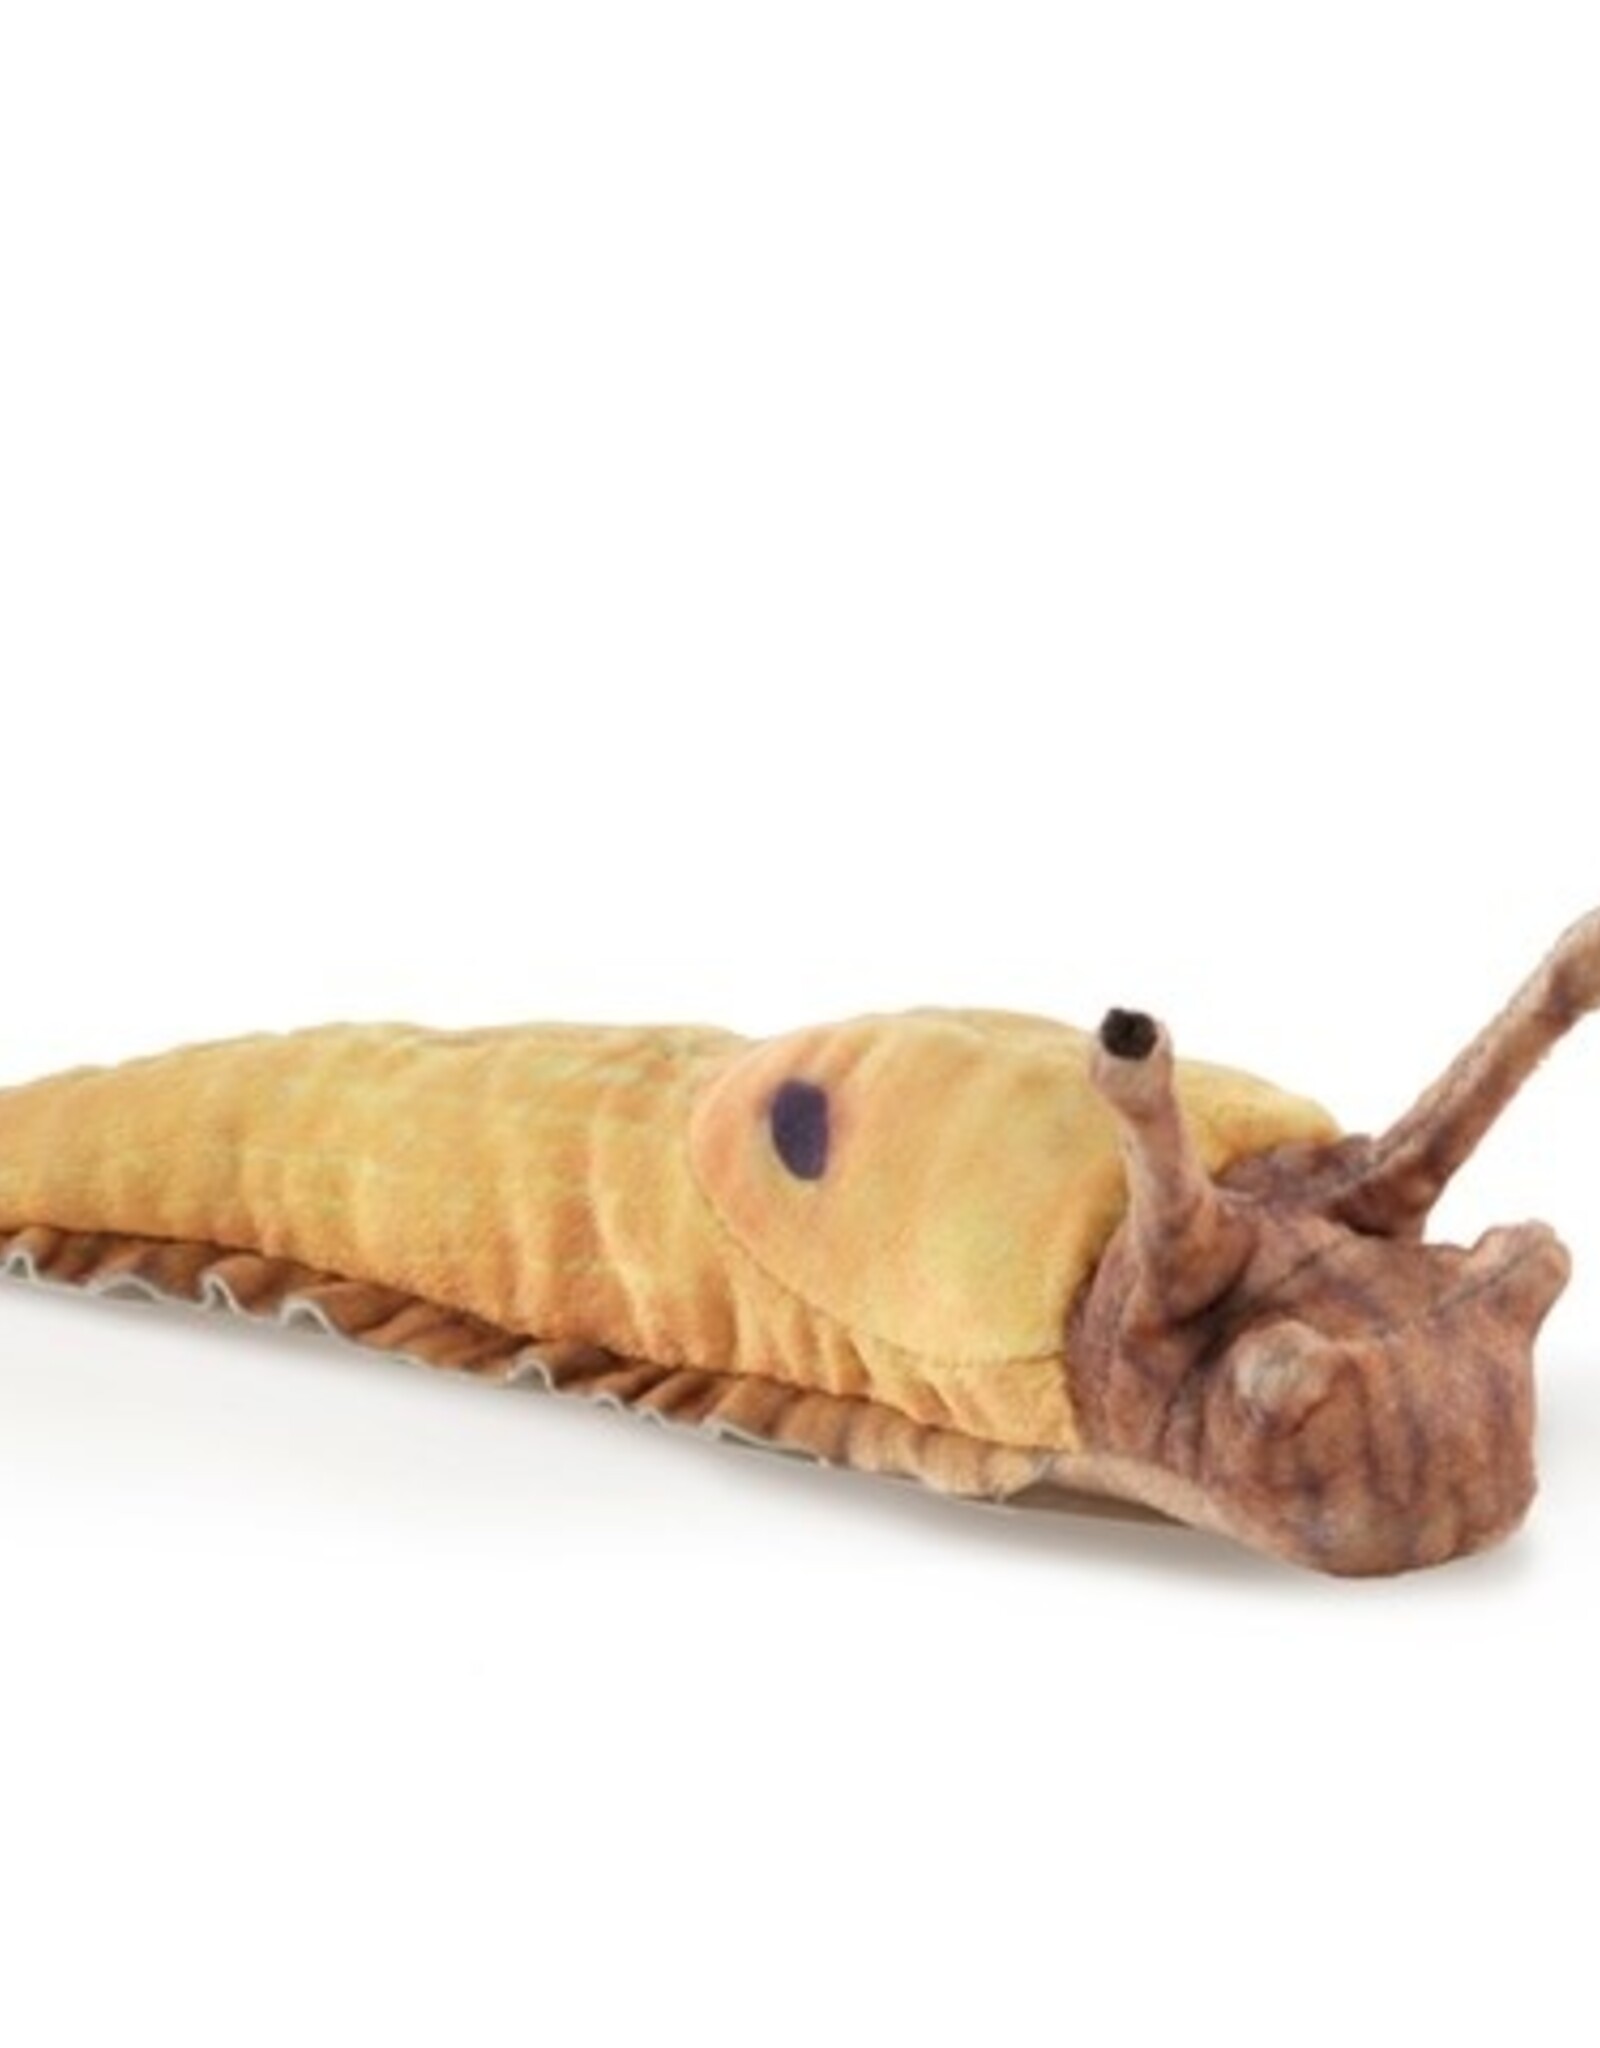 Folkmanis Finger Puppet: Banana Slug